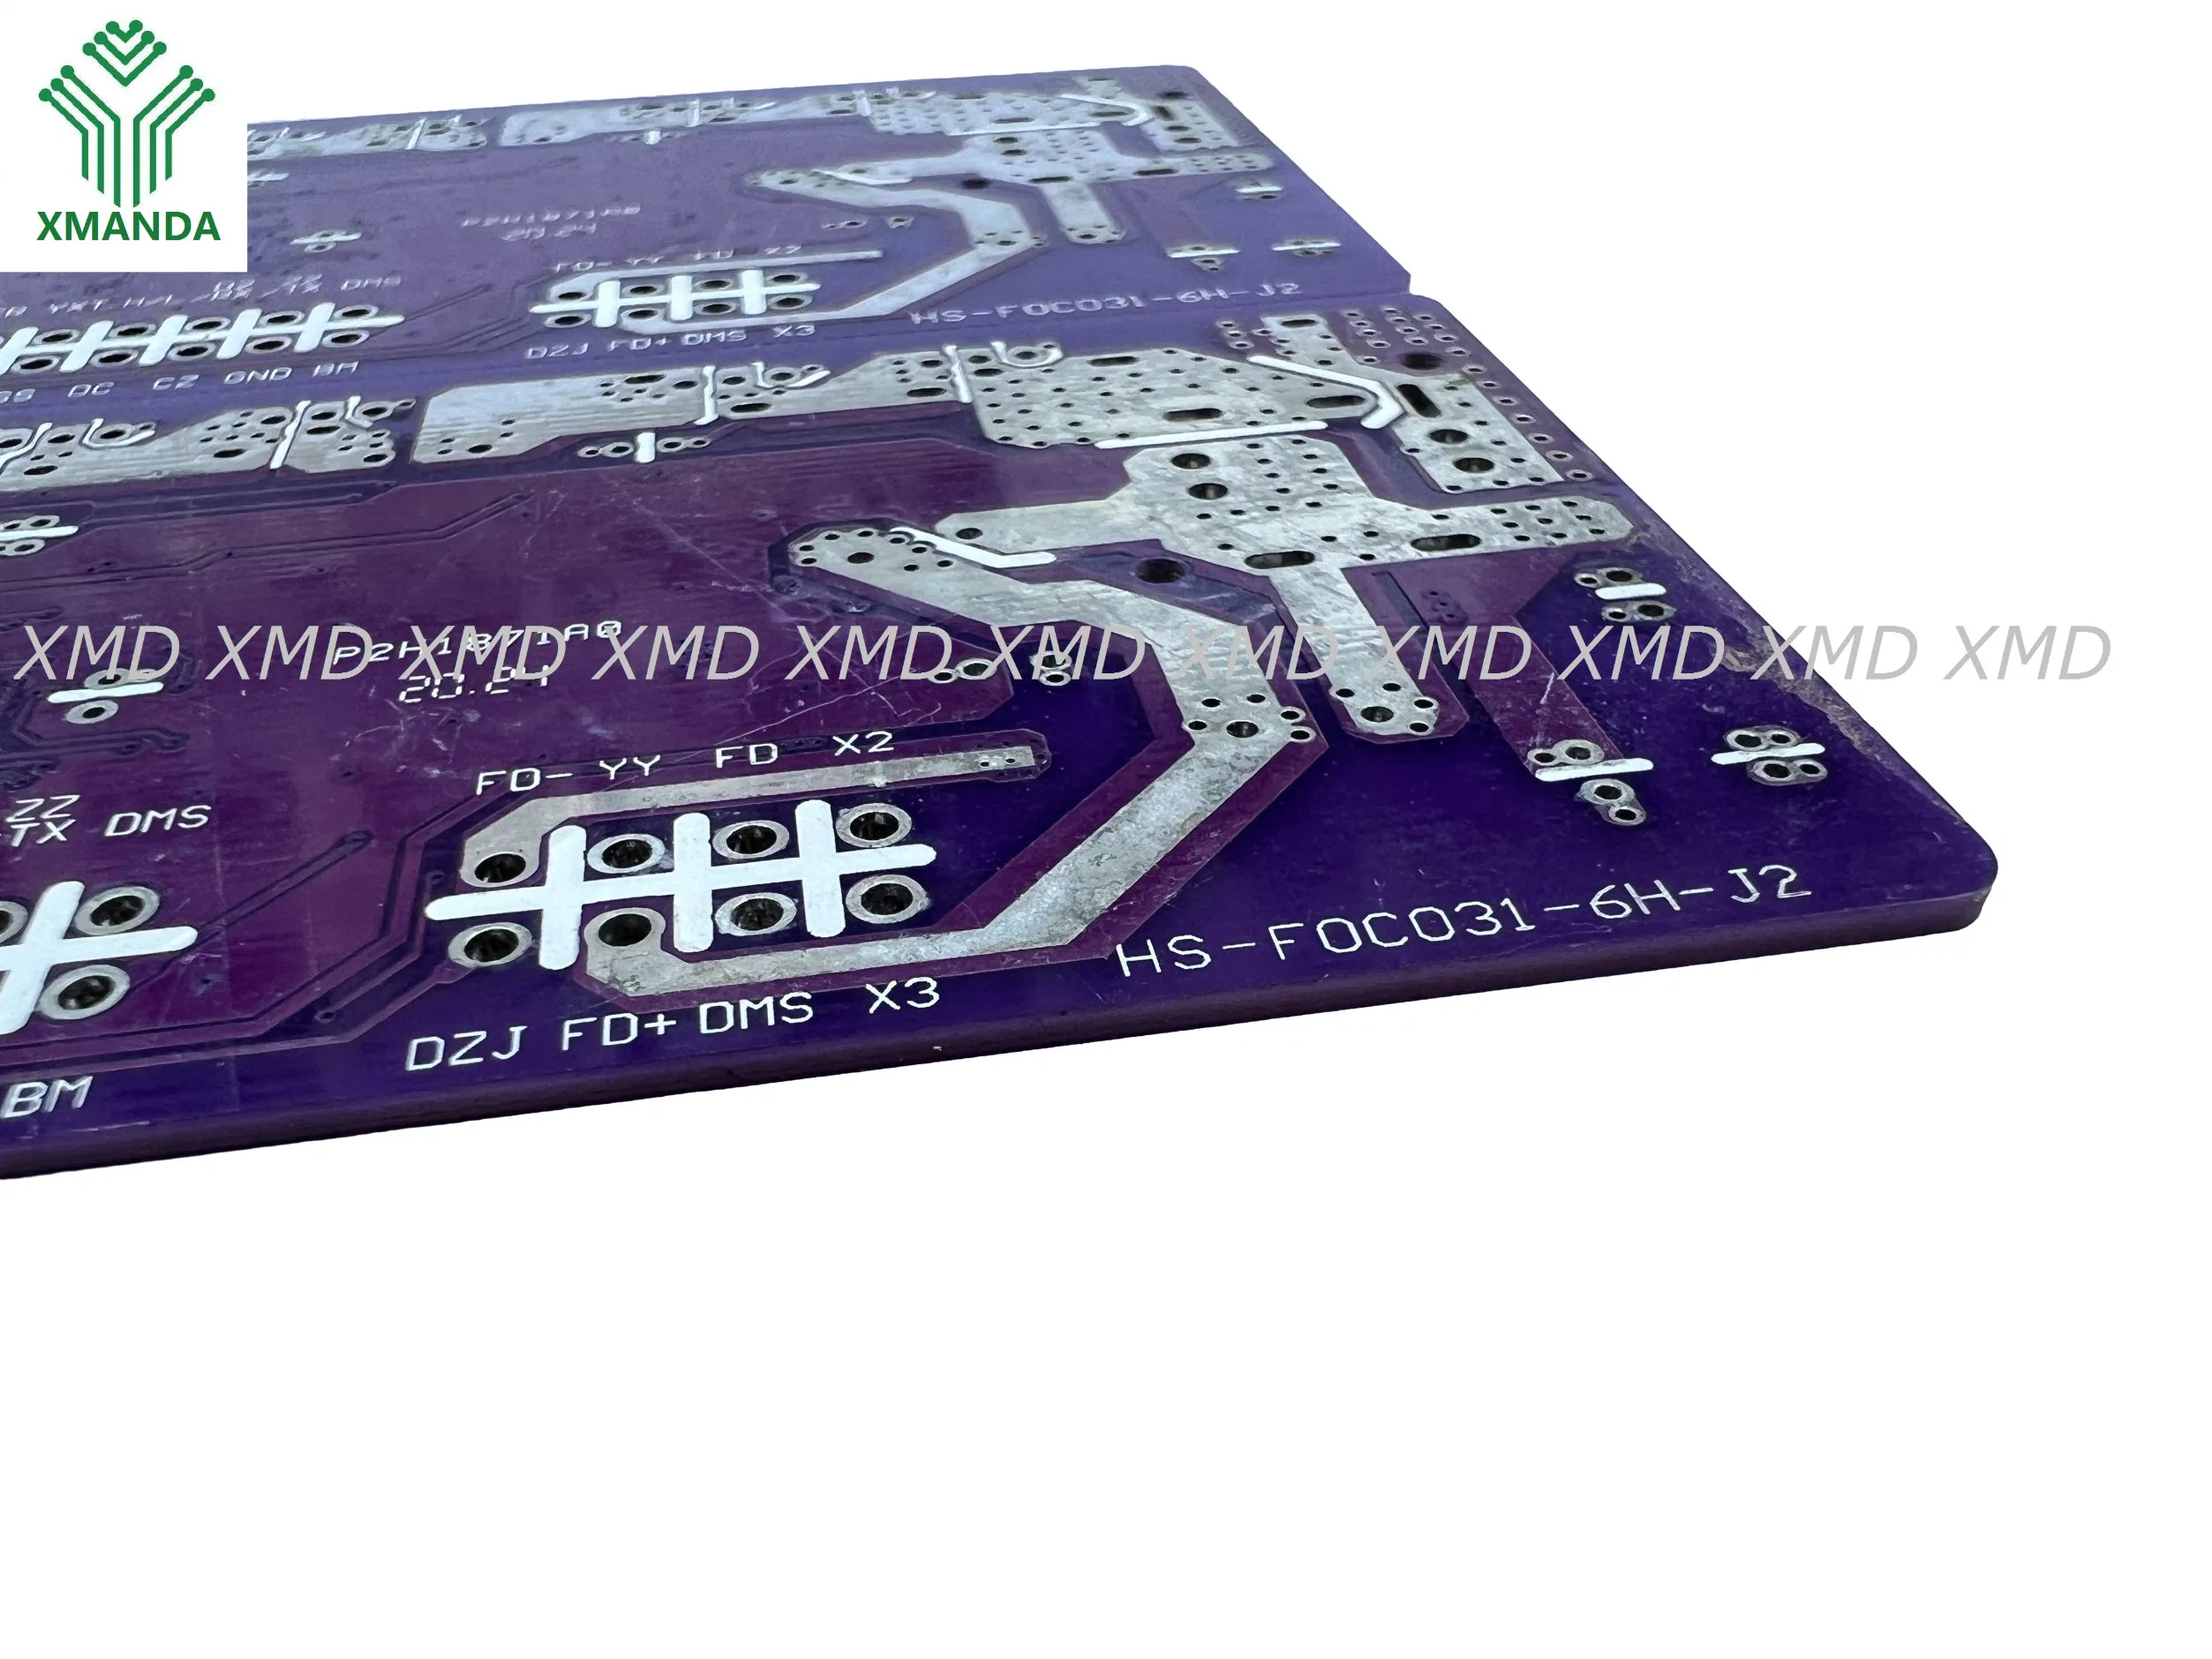 Purple Printed Circut Board